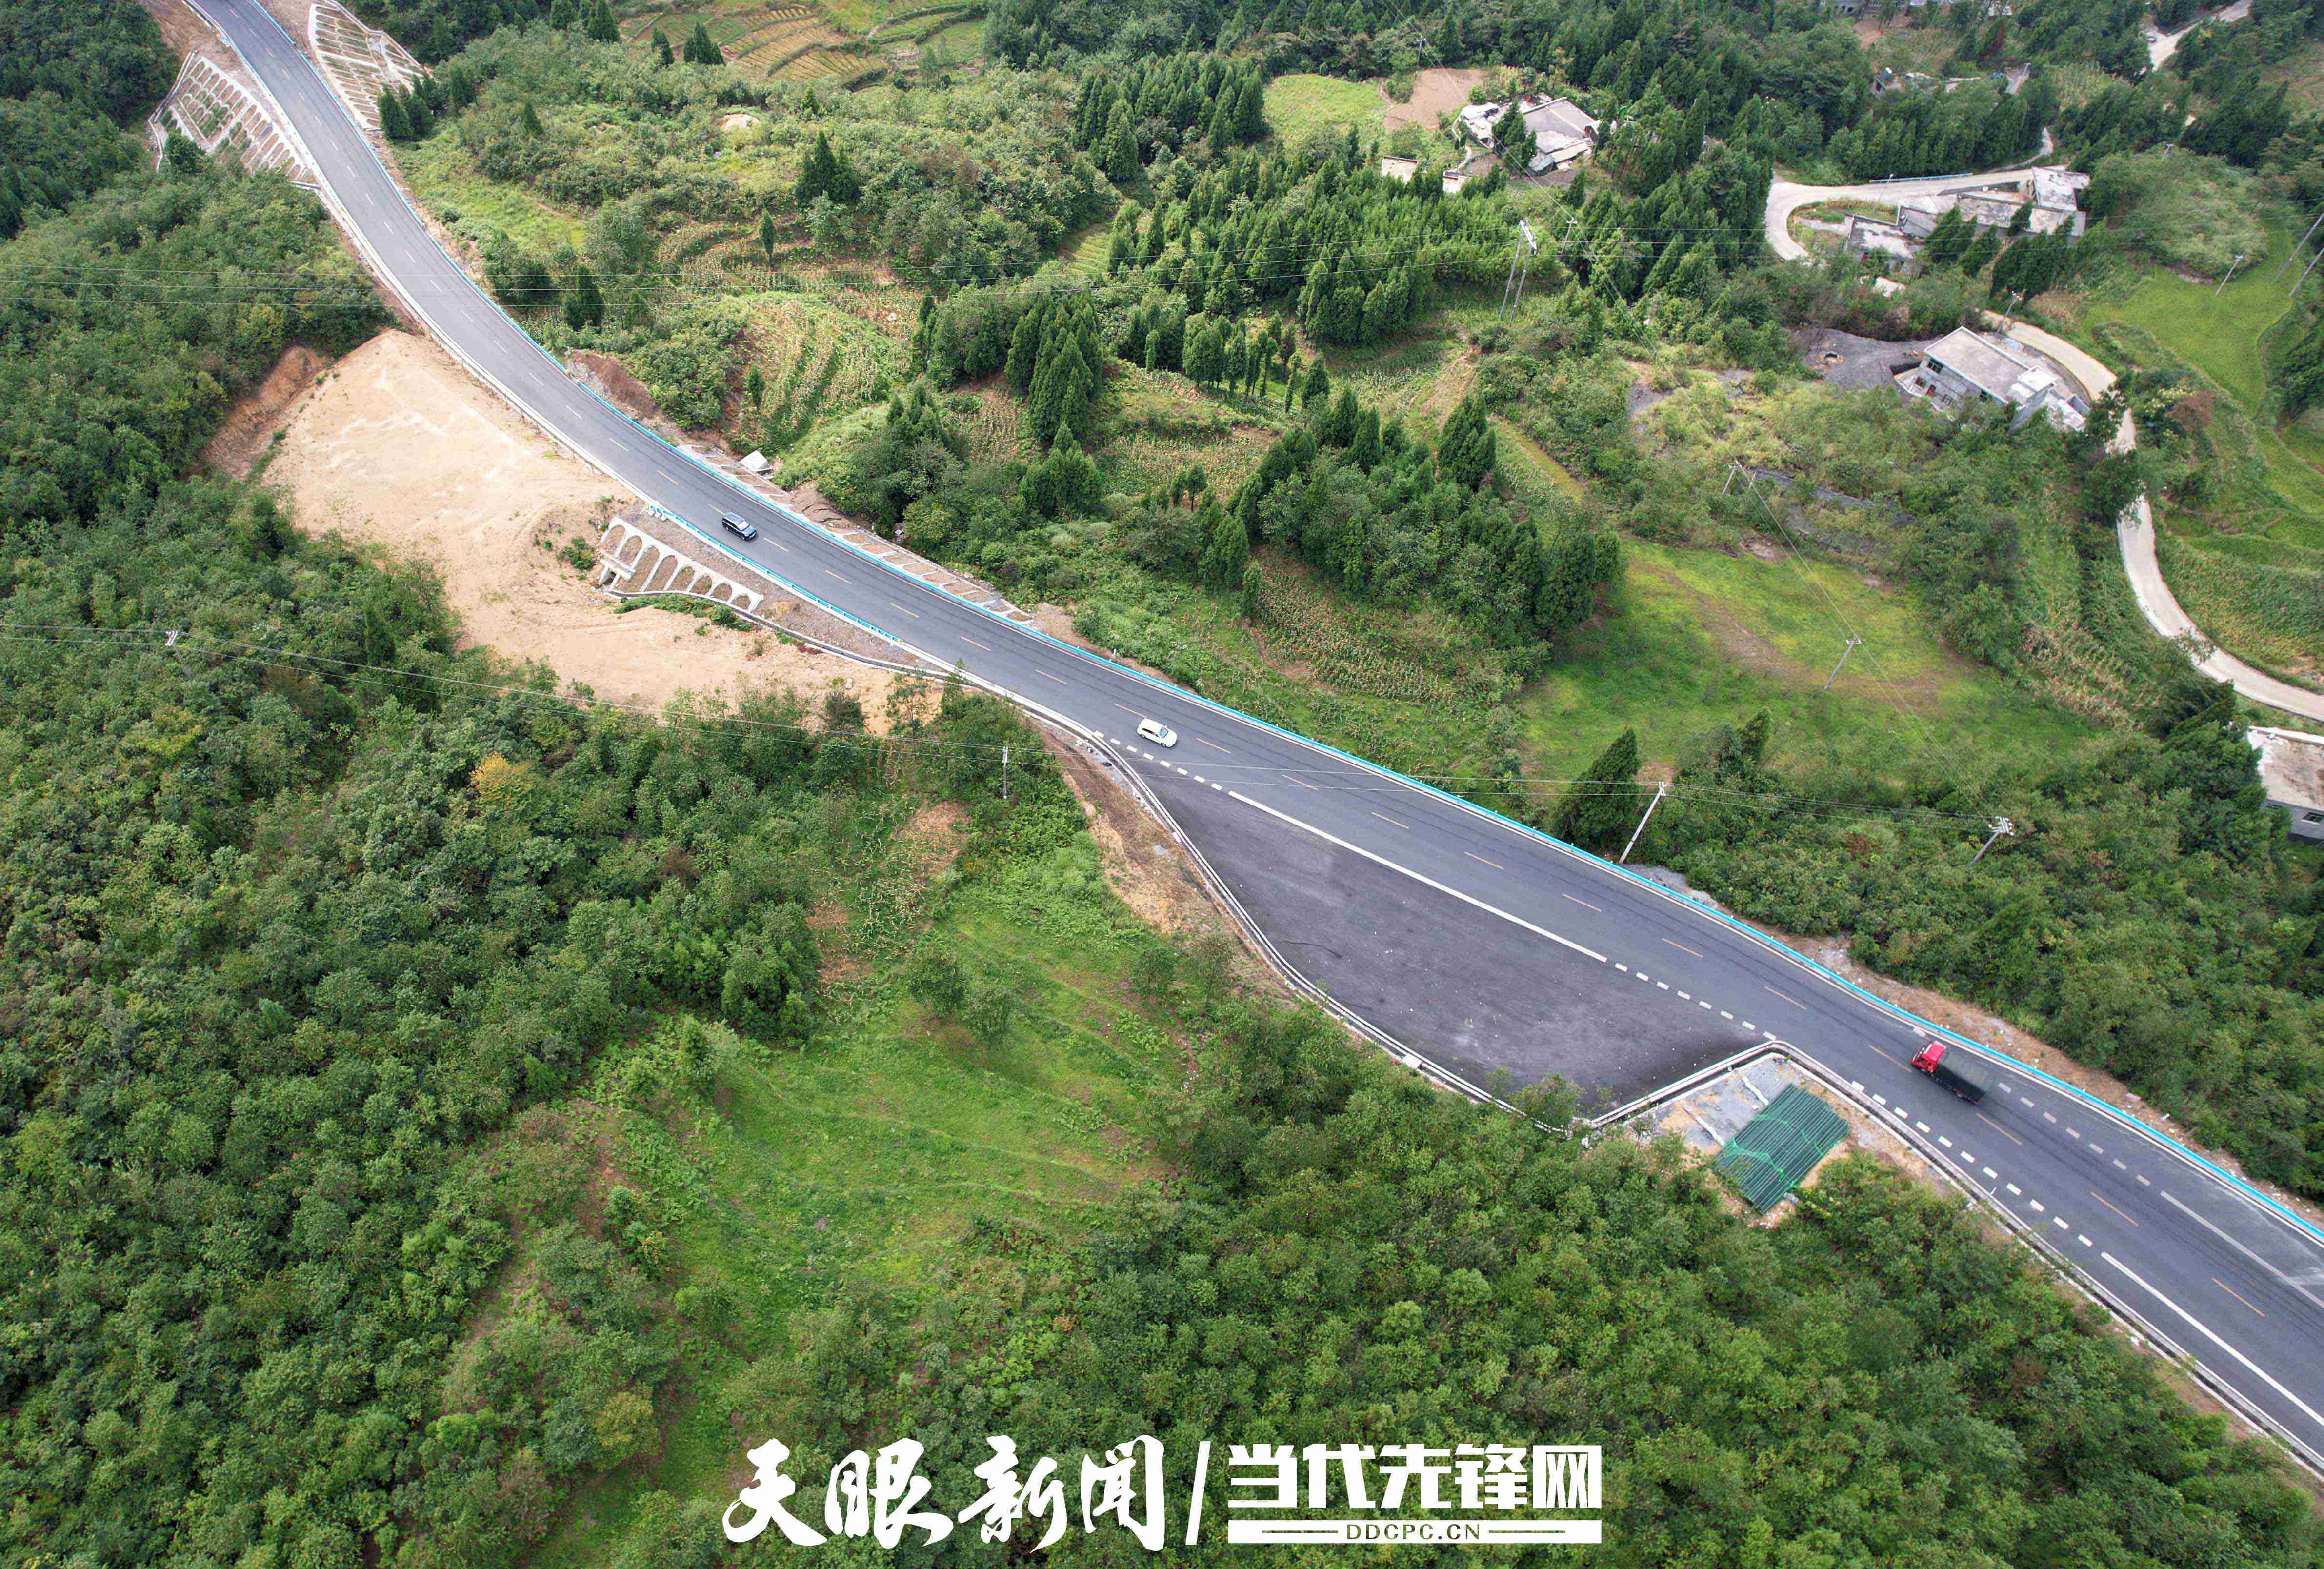 8月30日,汽车行驶在毕节市织金县境内的g321青山至城关公路上.